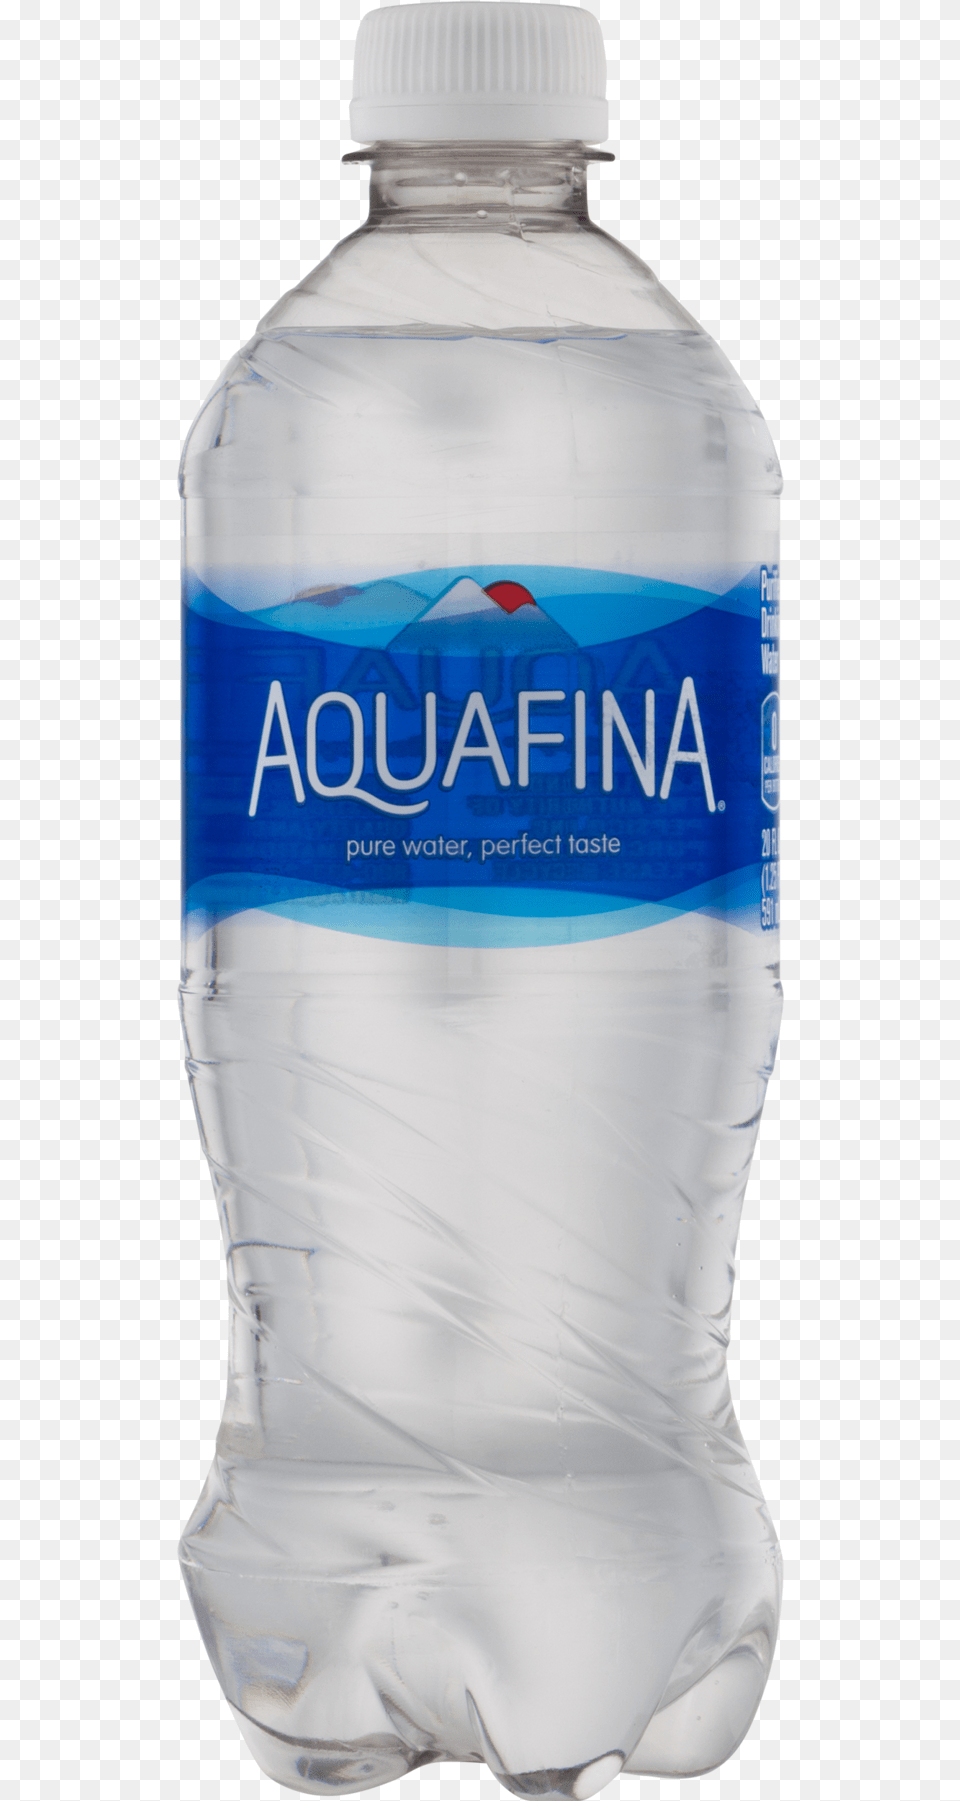 Oz Aquafina Bottle, Beverage, Mineral Water, Water Bottle, Adult Png Image